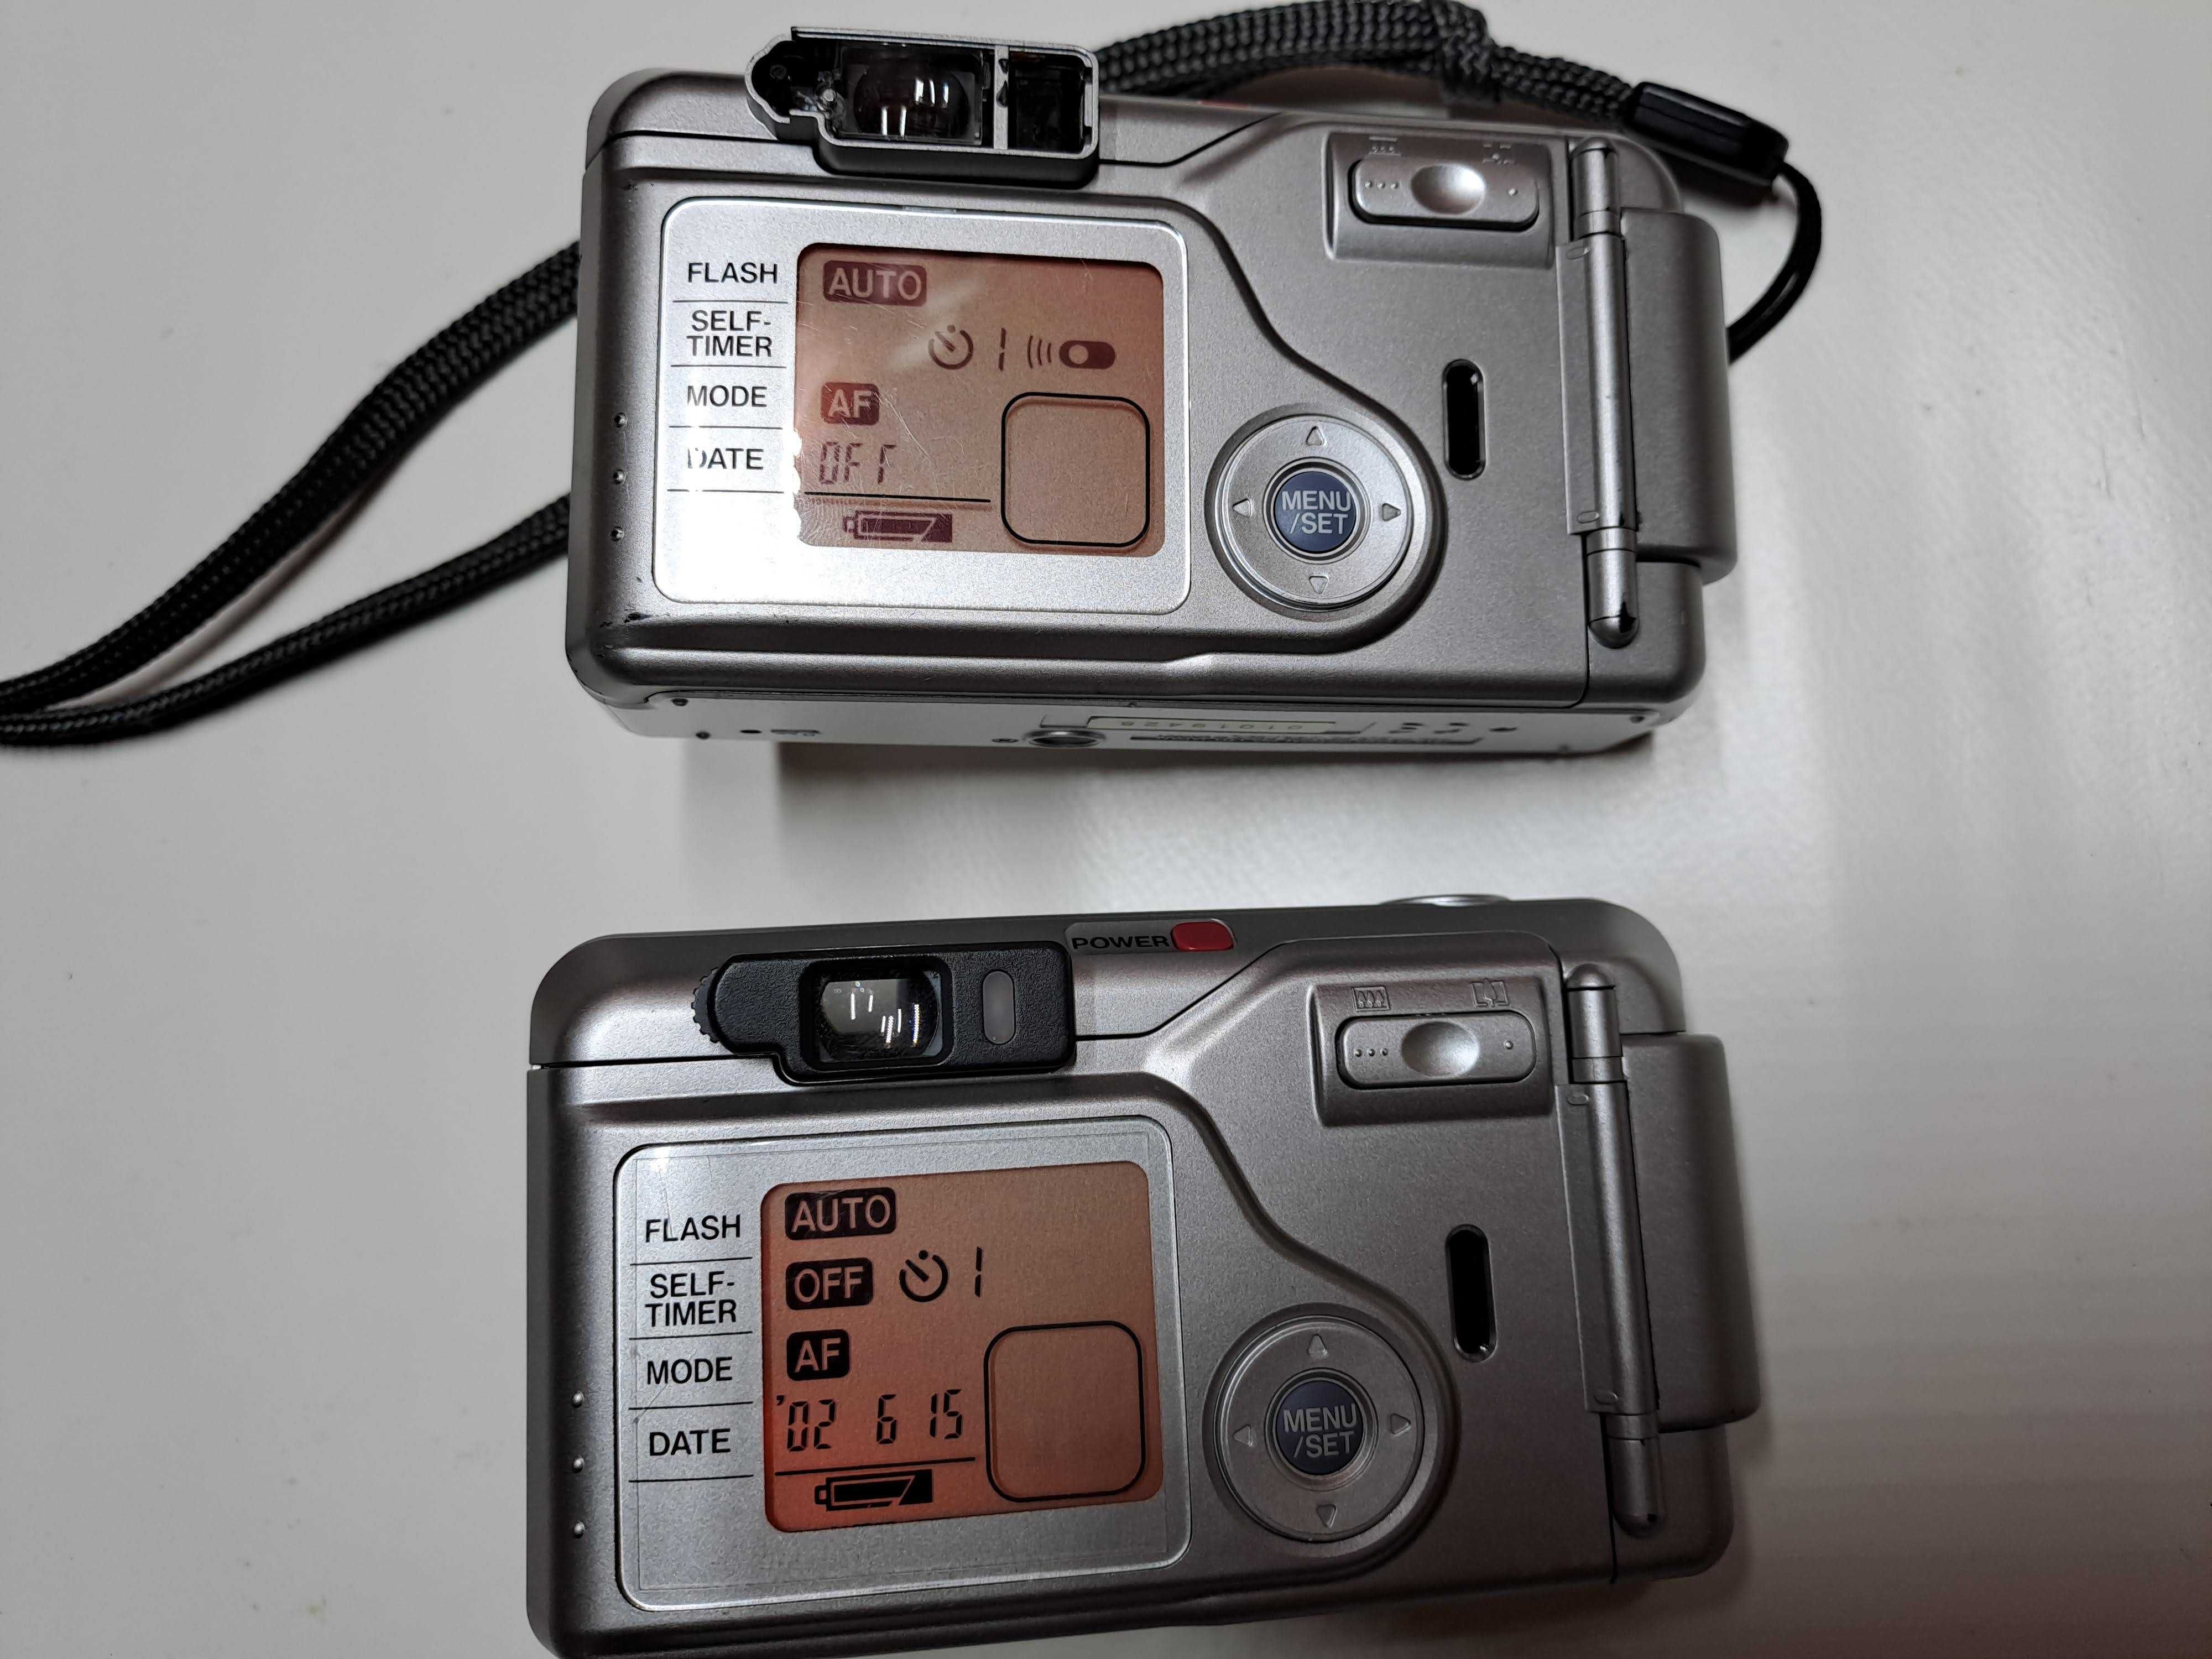 2 x aparat kompaktowy Fujifilm Zoom Date 160S